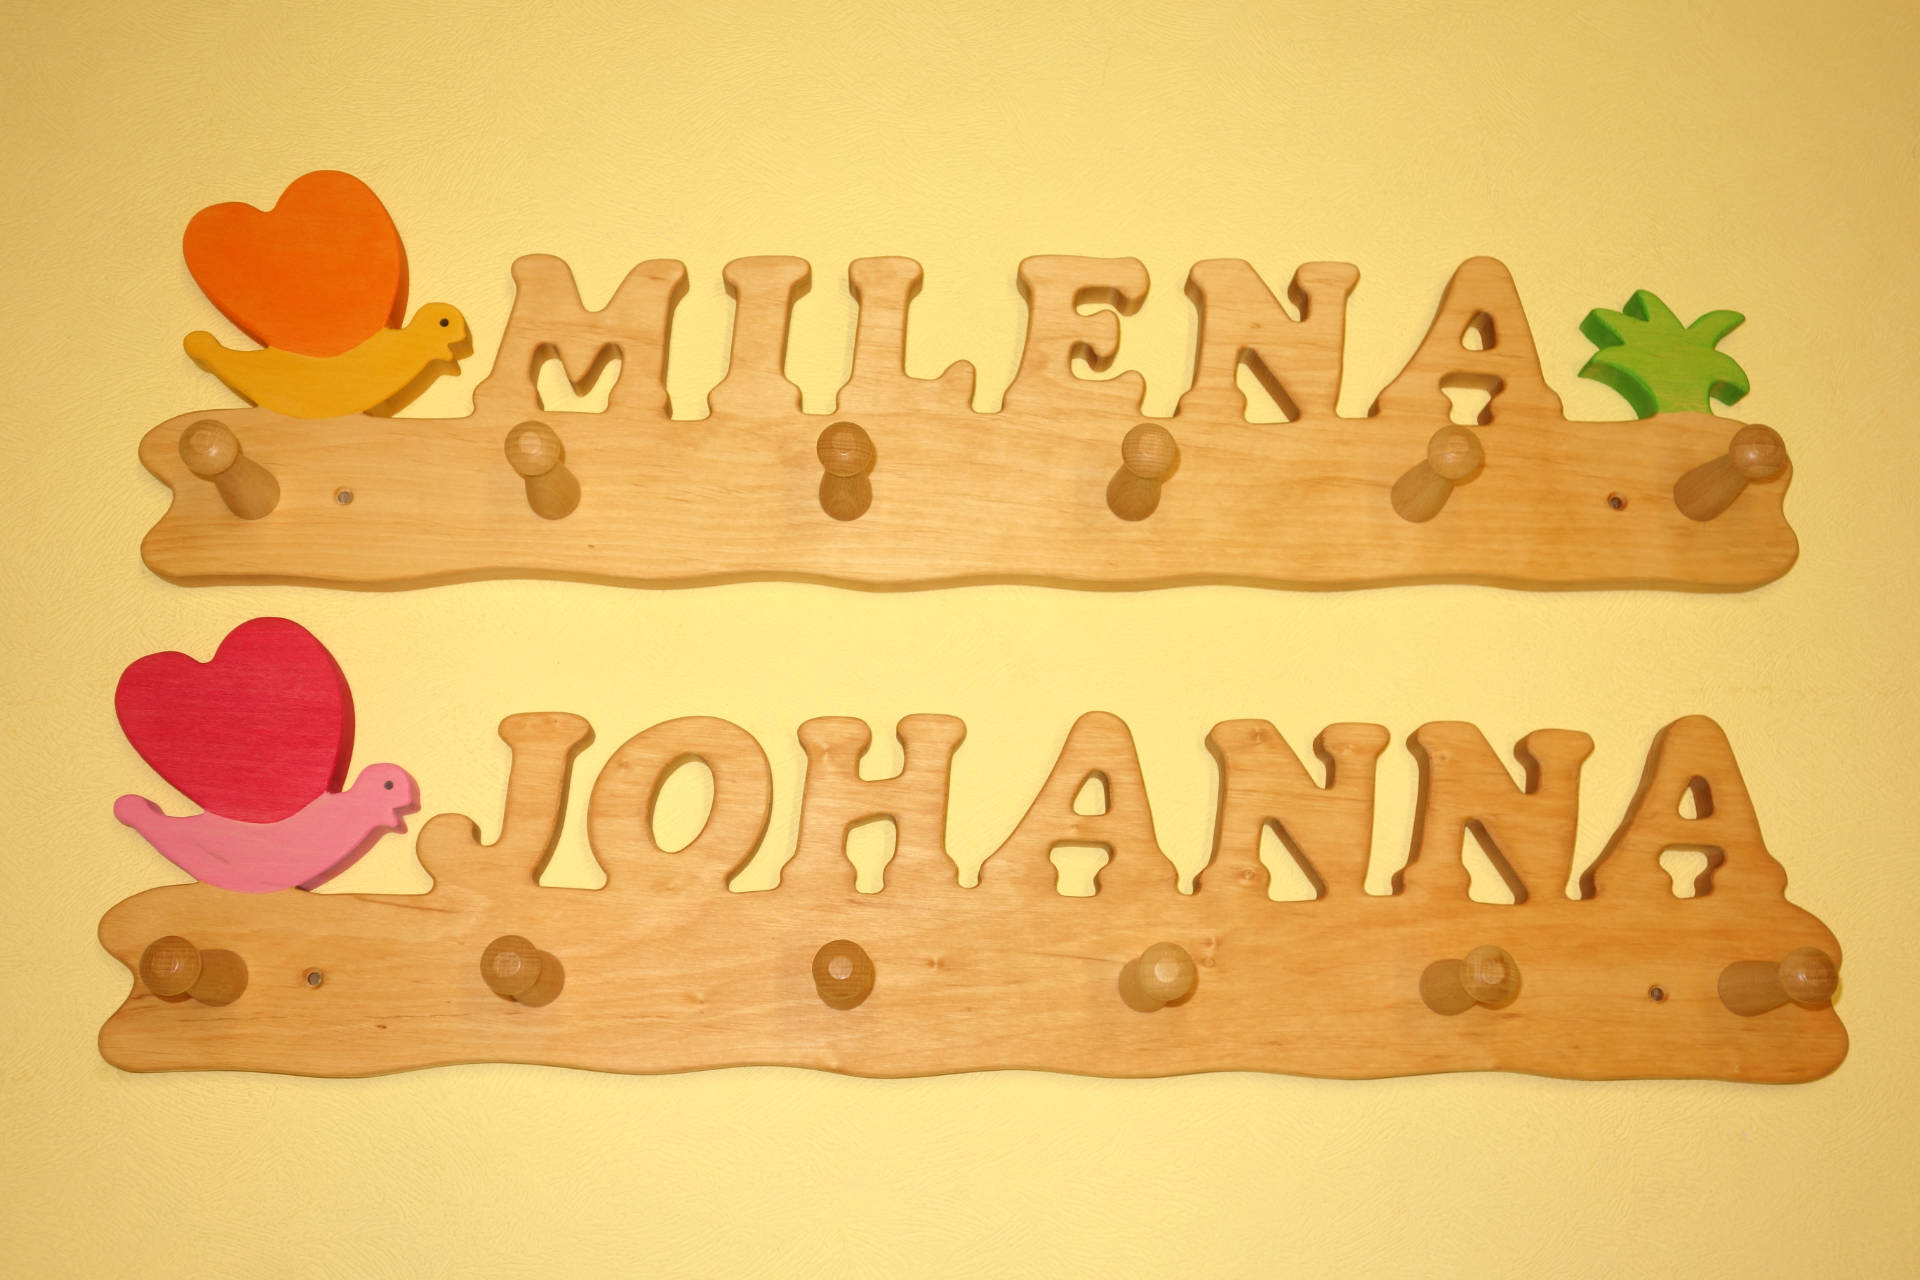 Kindergarderobe mit Name Johanna Milena und Schmetterling